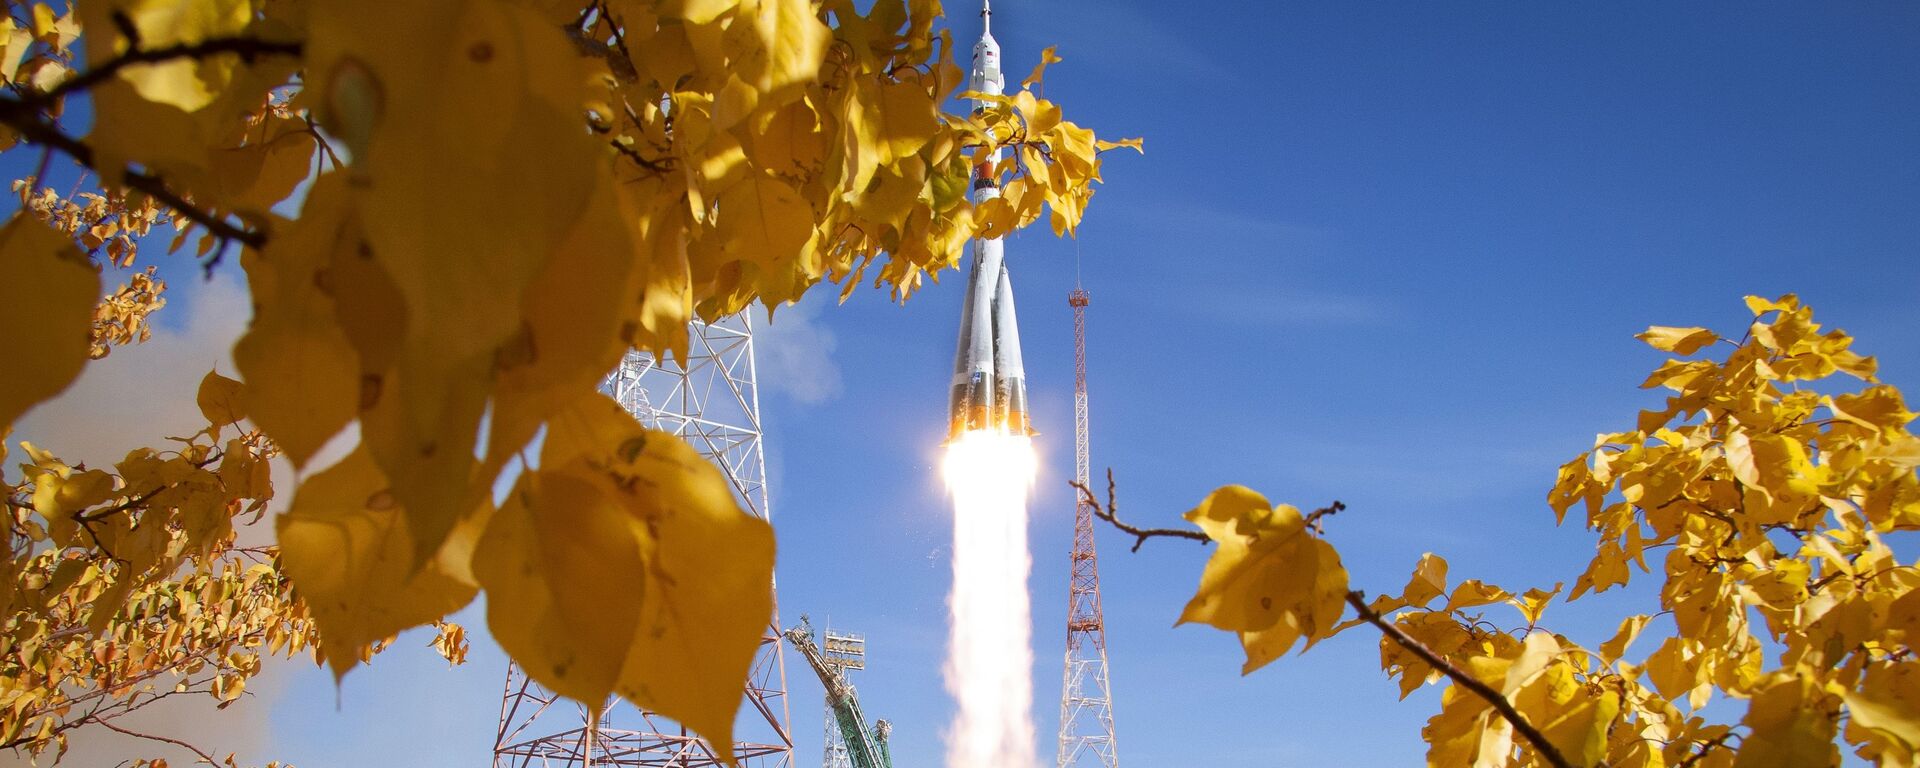 El lanzamiento del Soyuz 2.1a con el Soyuz MS-17 desde el Cosmódromo de Baikonur, el 14 de octubre de 2020 - Sputnik Mundo, 1920, 14.10.2020